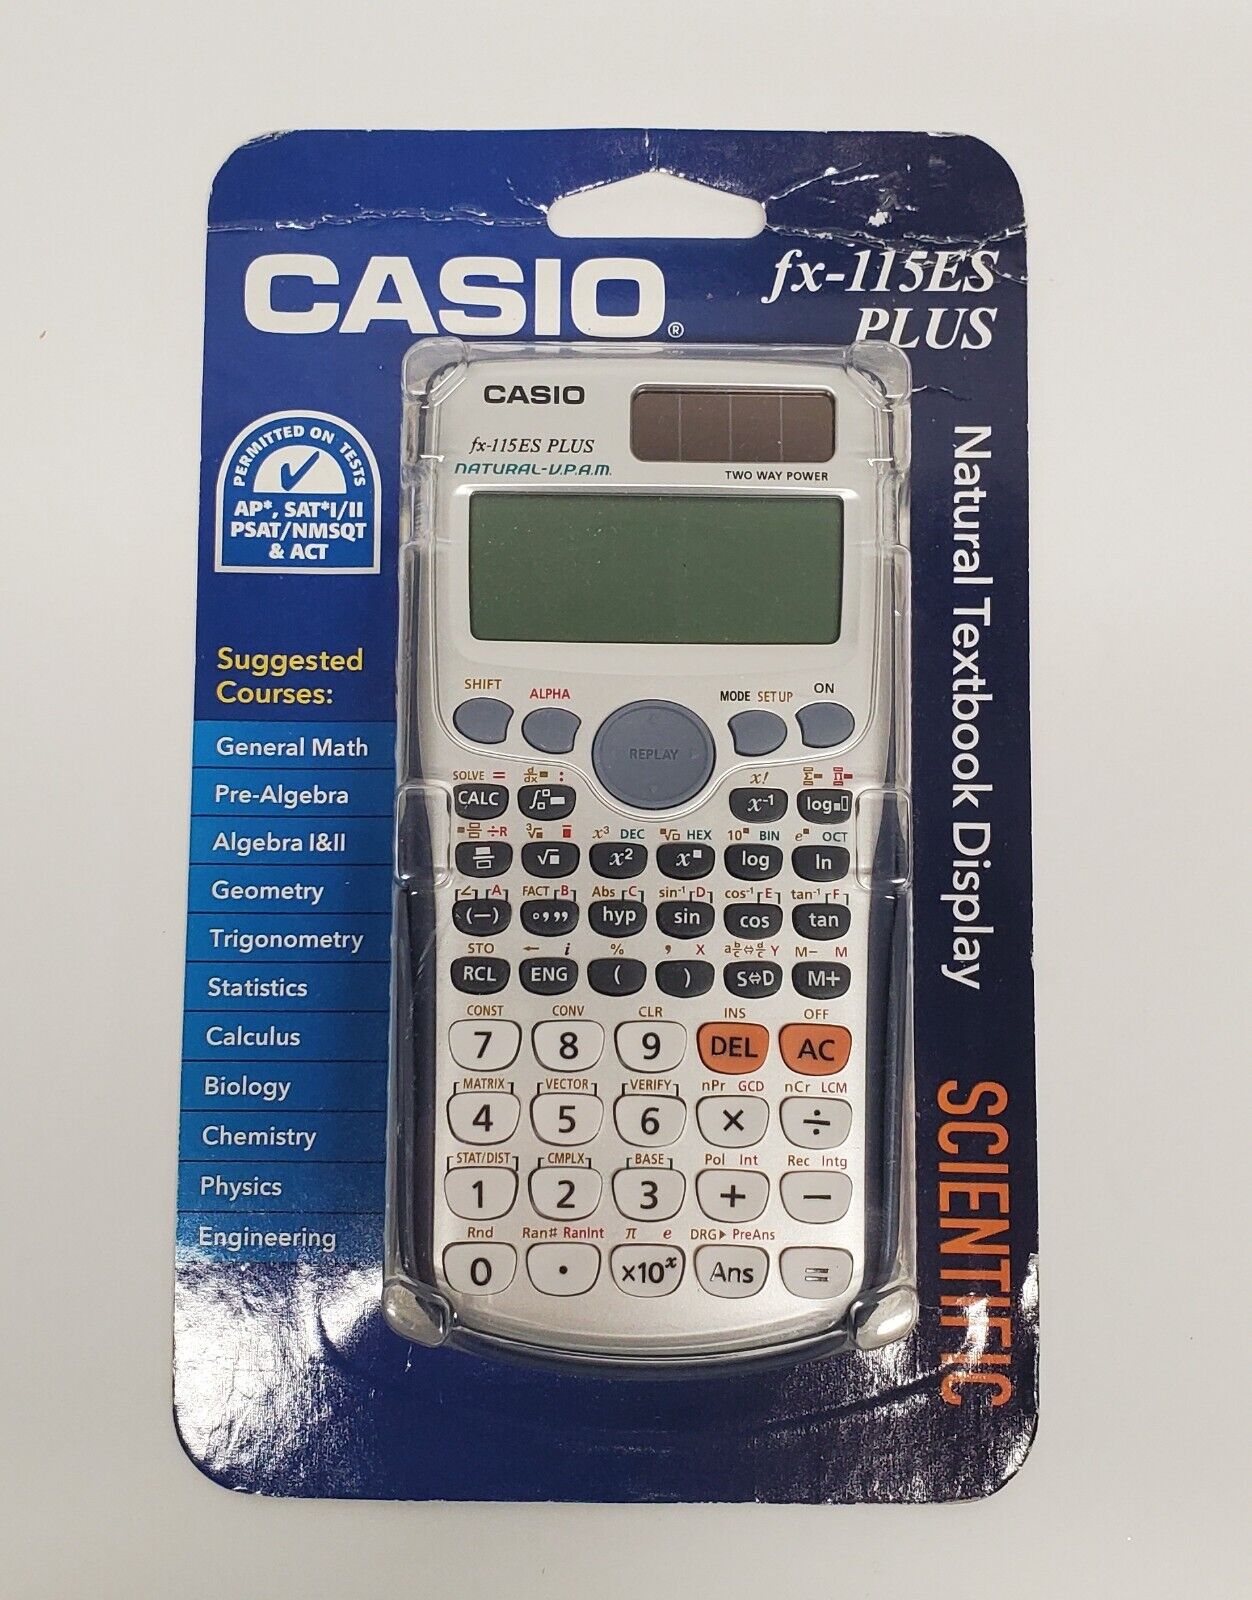 Casio FX-115ES PLUS Scientific Calculator